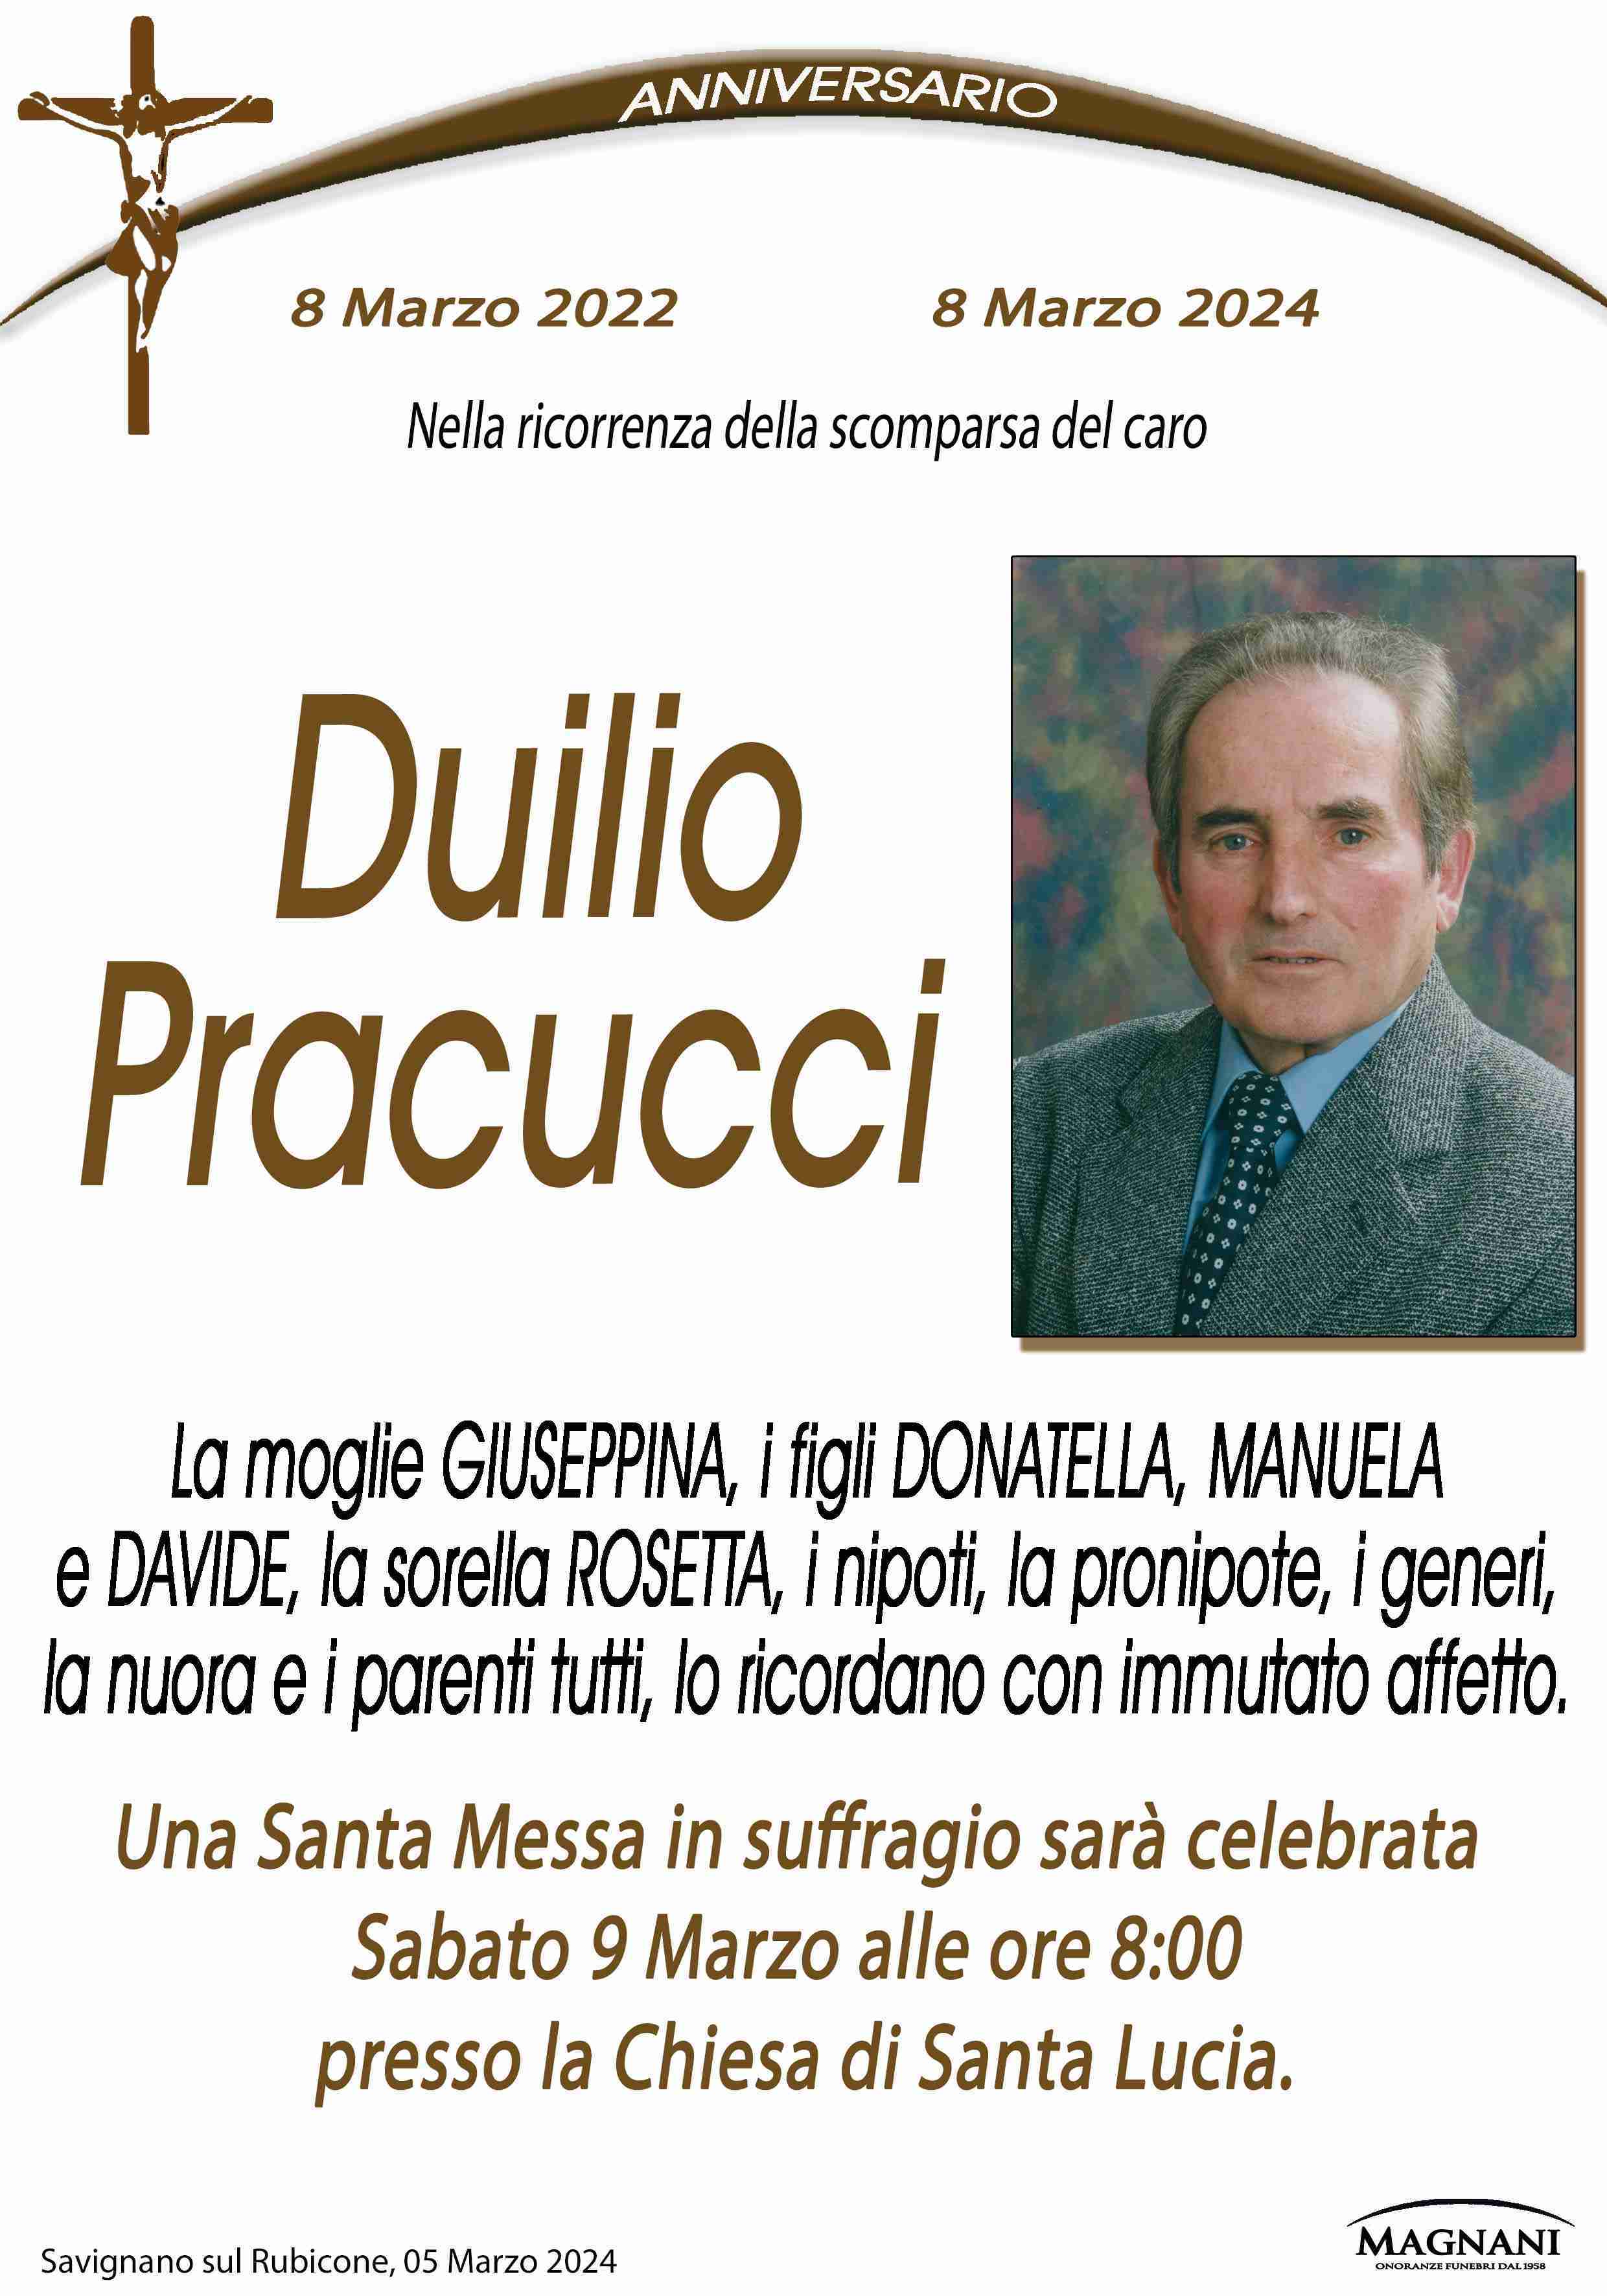 Duilio Pracucci